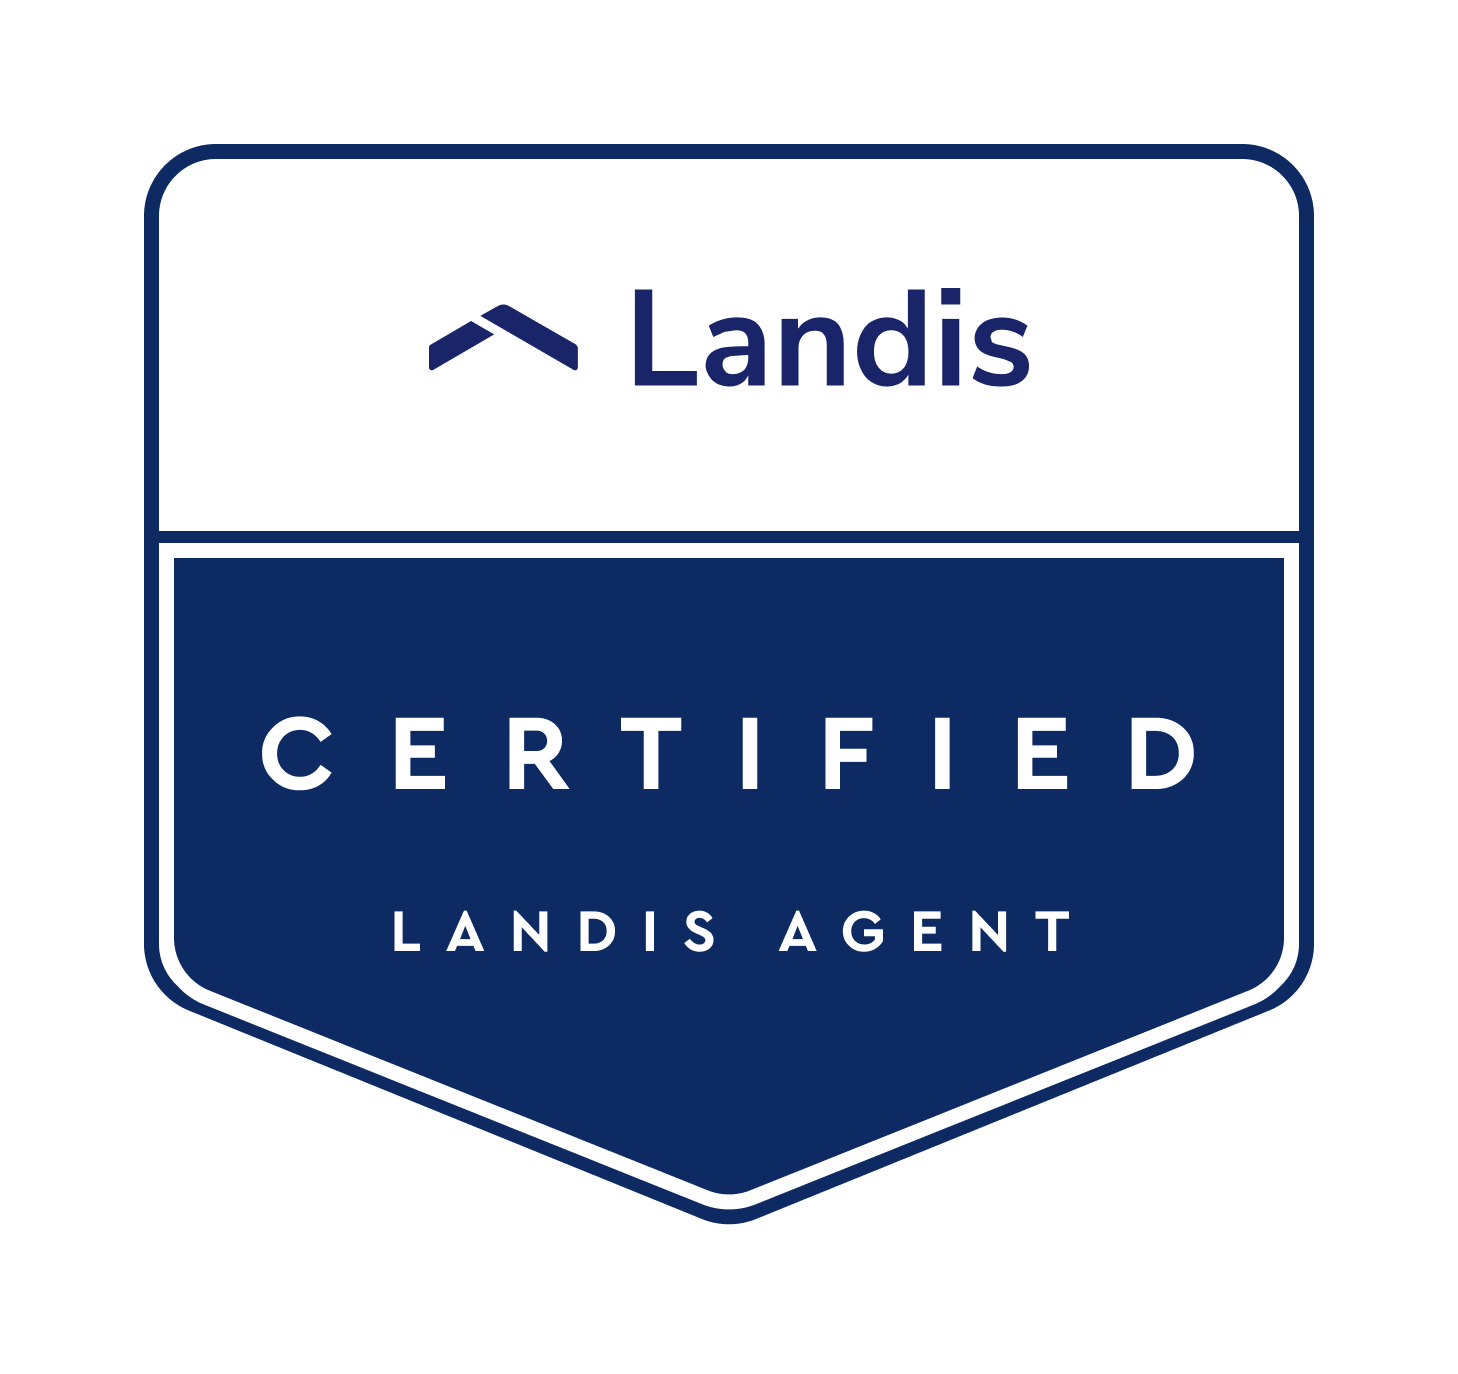 Landis certified logo 